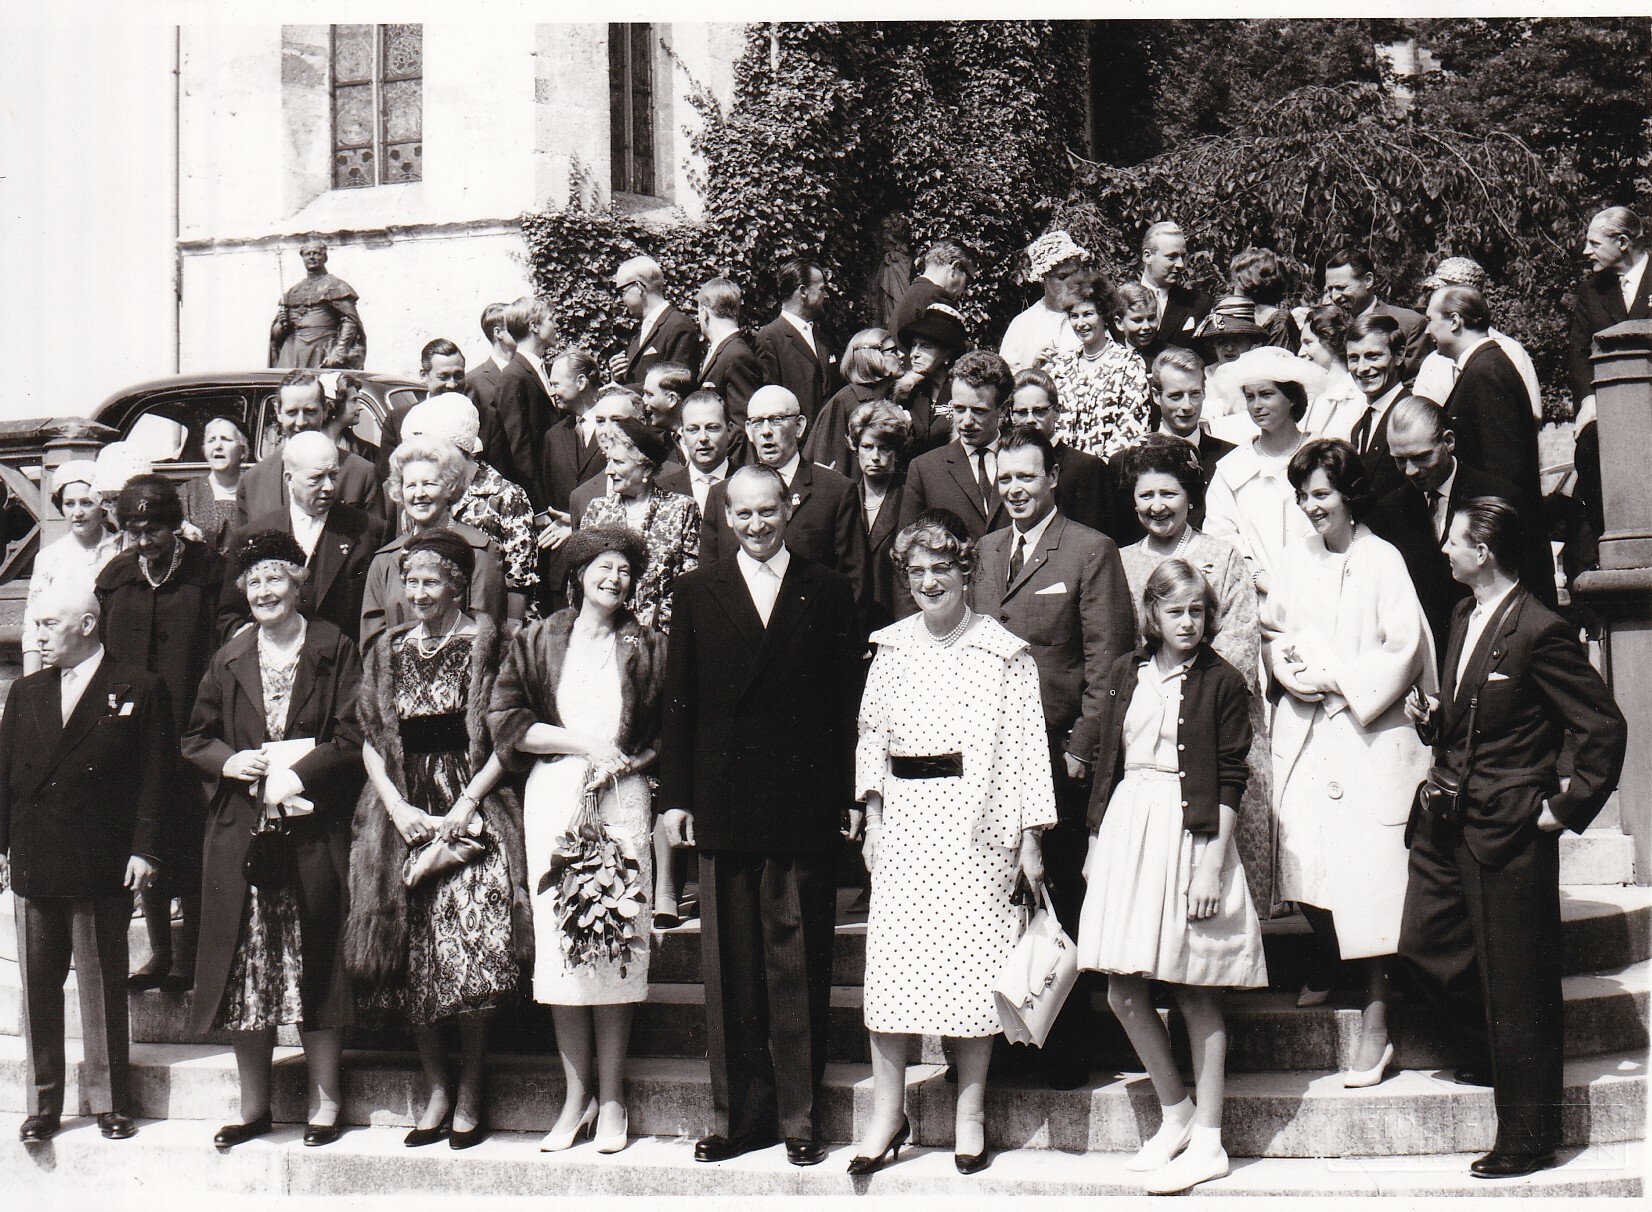 Bildpostkarte mit Foto vom Familientreffen zum 900-jährigen Bestehen des Hauses Hohenzollern auf der Burg Hohenzollern, 22.07.1961 (Schloß Wernigerode GmbH RR-F)